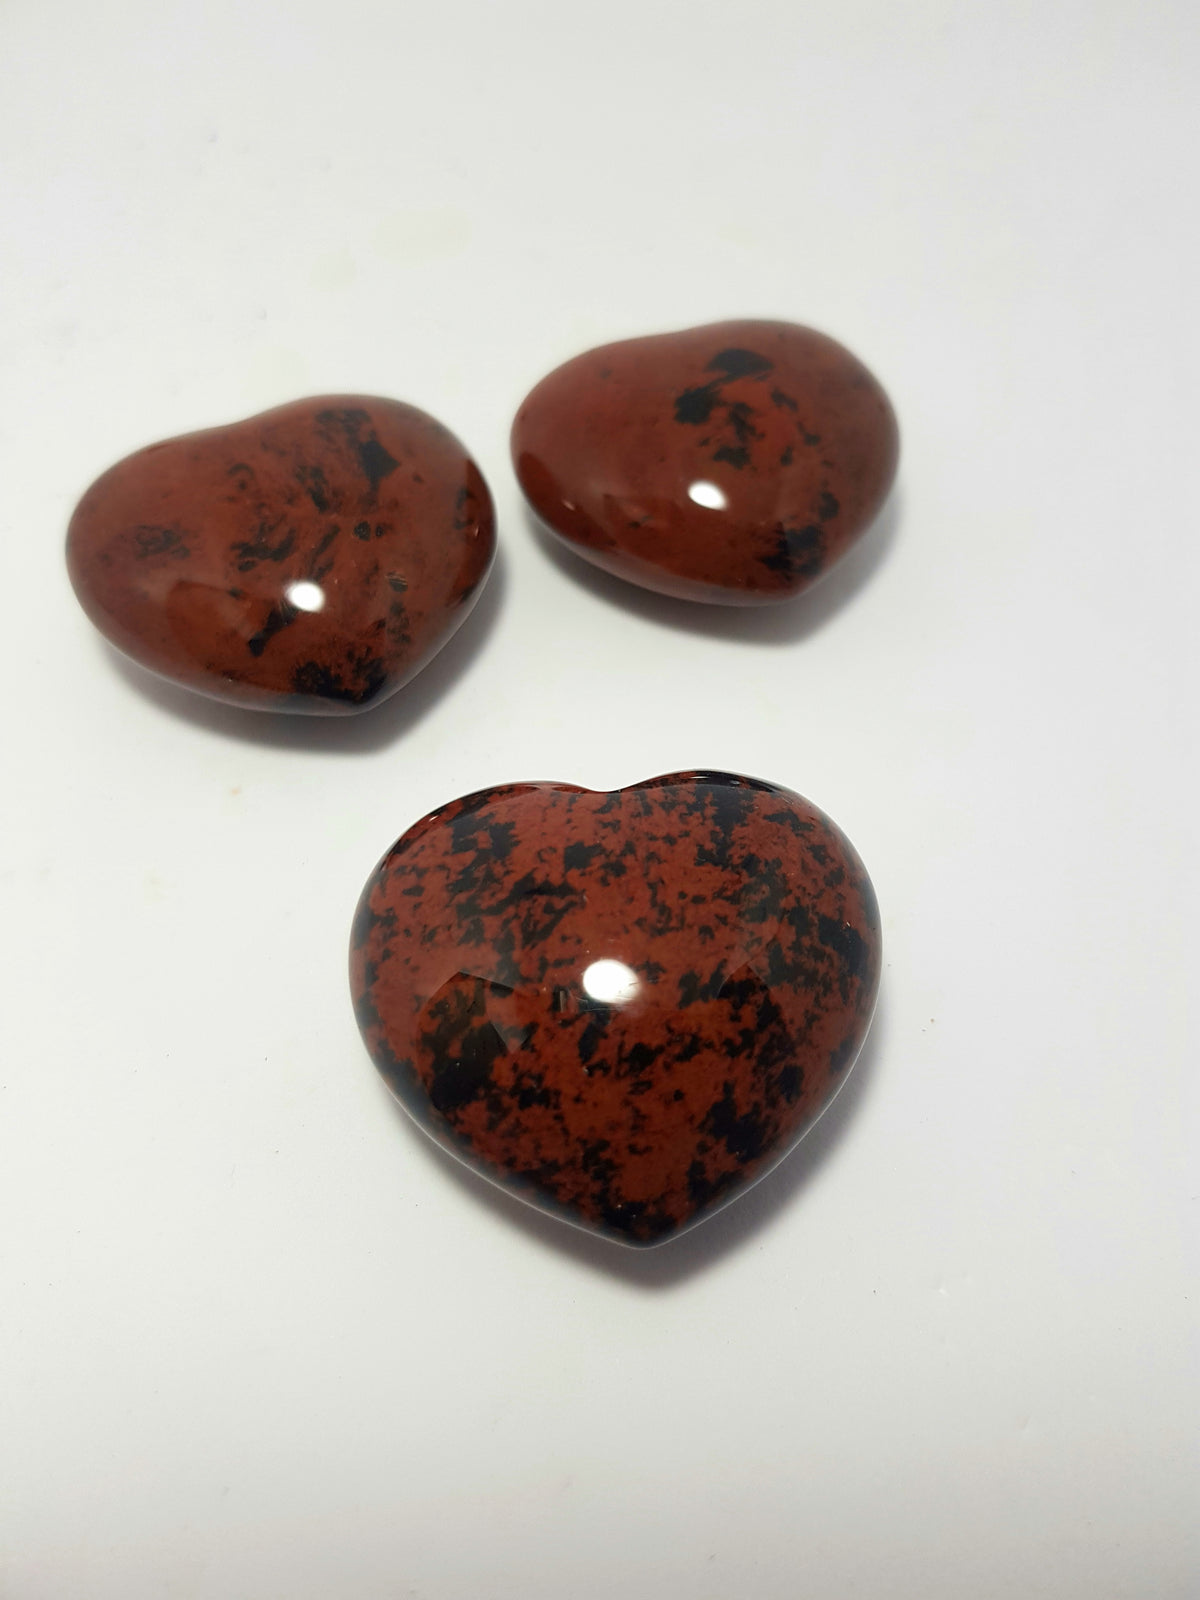 Mahogany obsidian heart